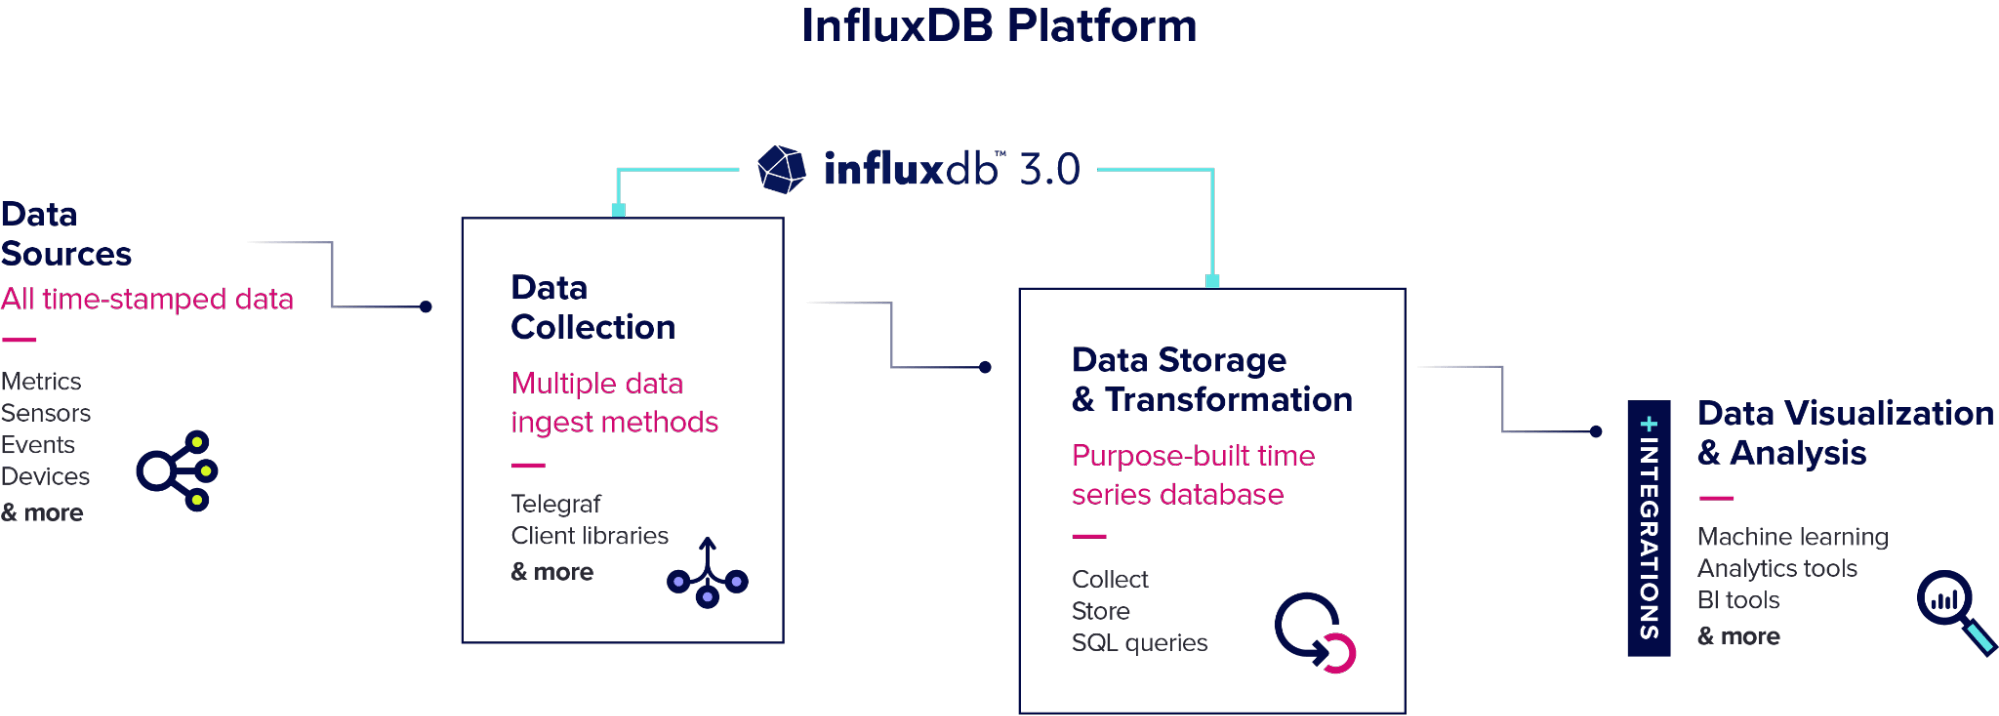 InfluxDB Platform